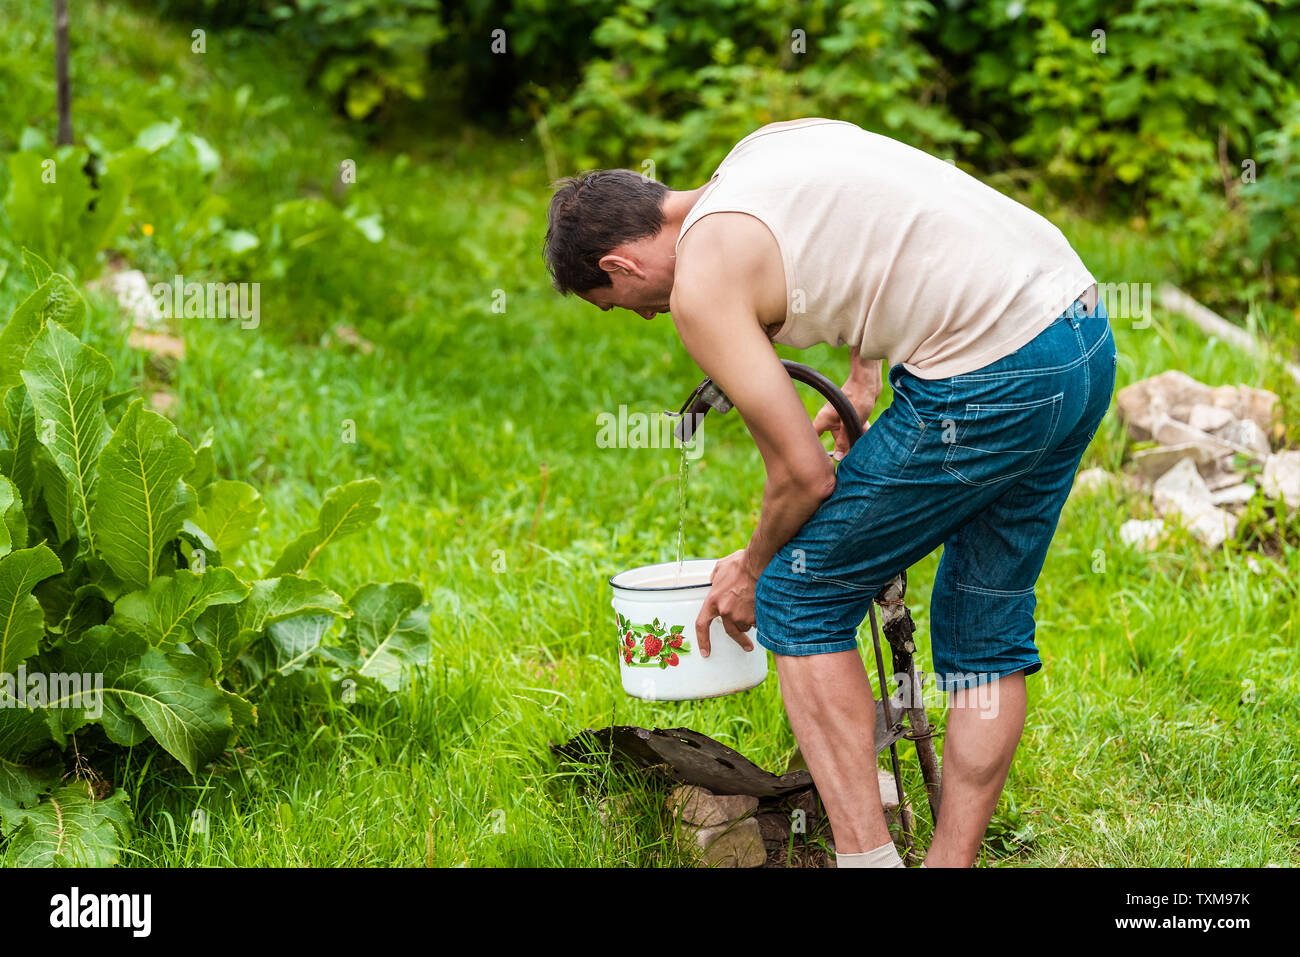 Junger Mann Landwirt waschen Sie Obst und Gemüse in grün sommer in der Ukraine sitzt von meerrettich Blätter Werk gut Hahn gießt Wasser in den Topf Stockfoto